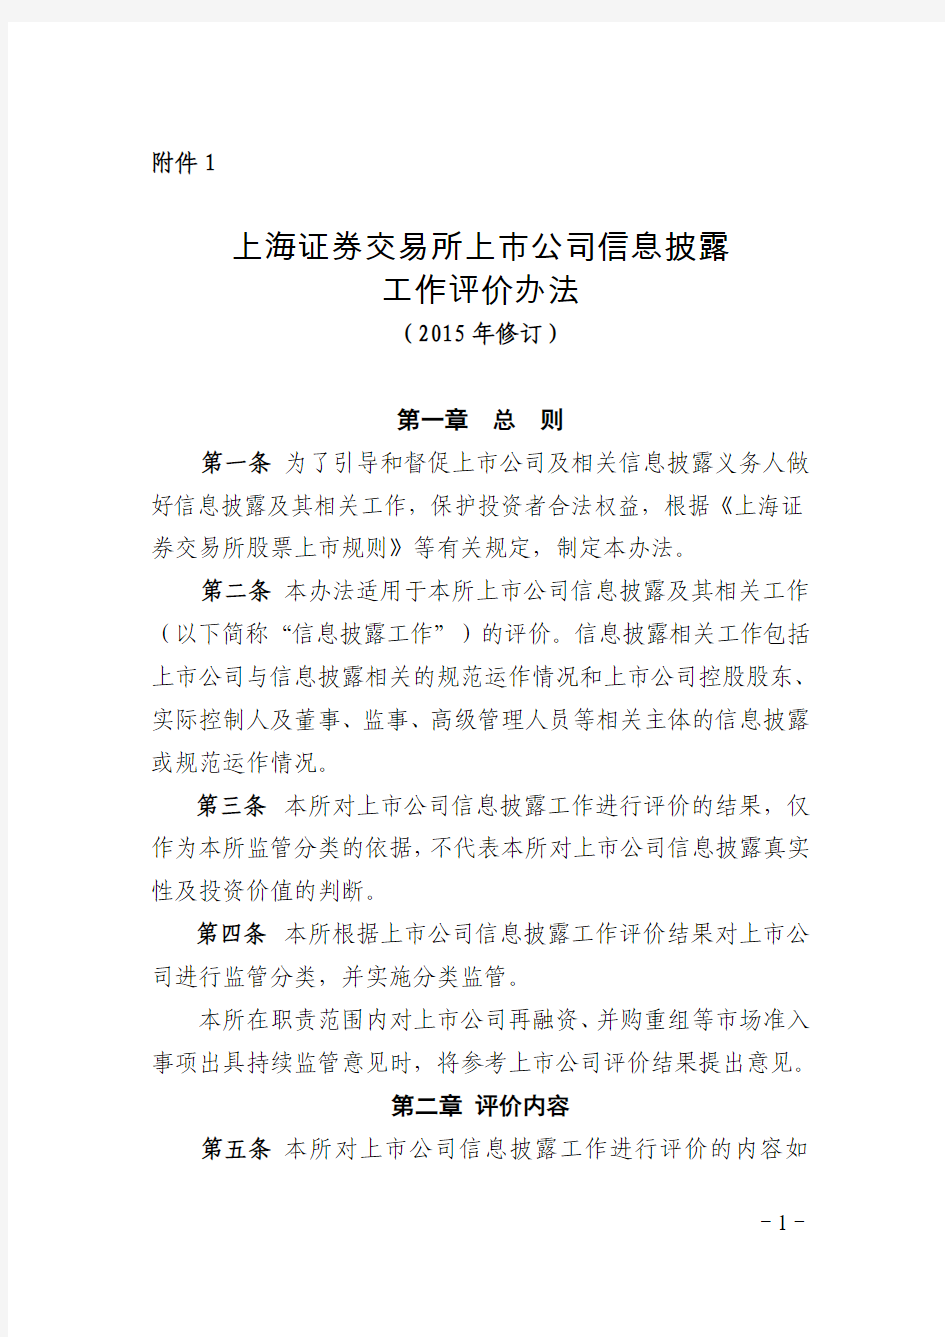 上海证券交易所上市公司信息披露工作评价办法(2015年修订)